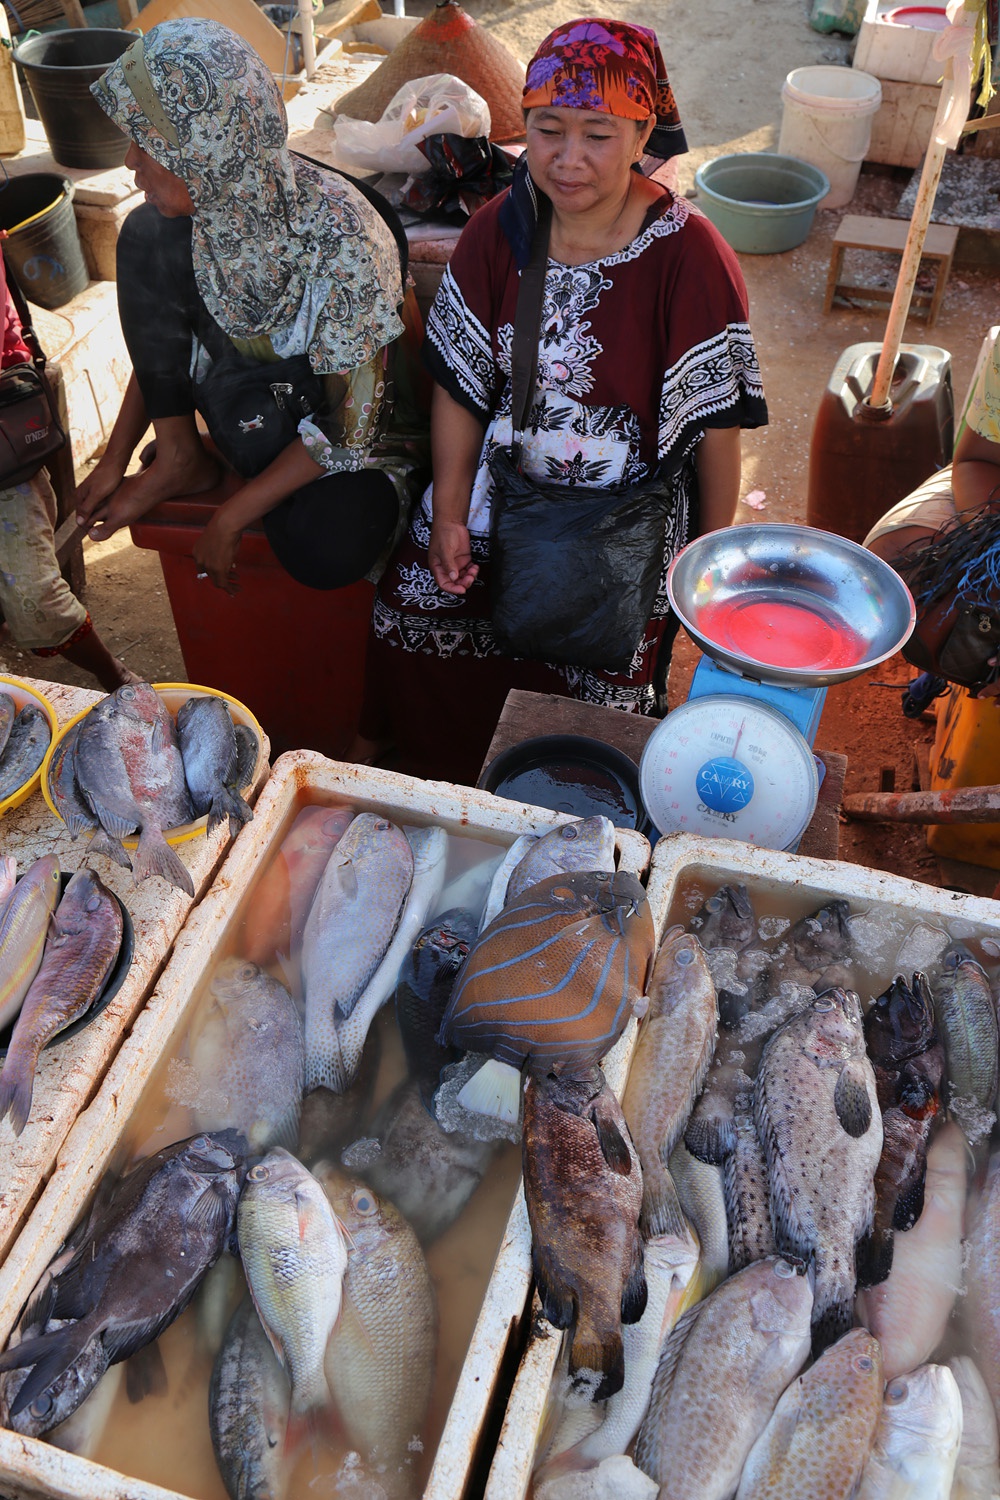 bill-hocker-fish-market-kedonganan-beach-jimbaran-bali-indonesia-2016